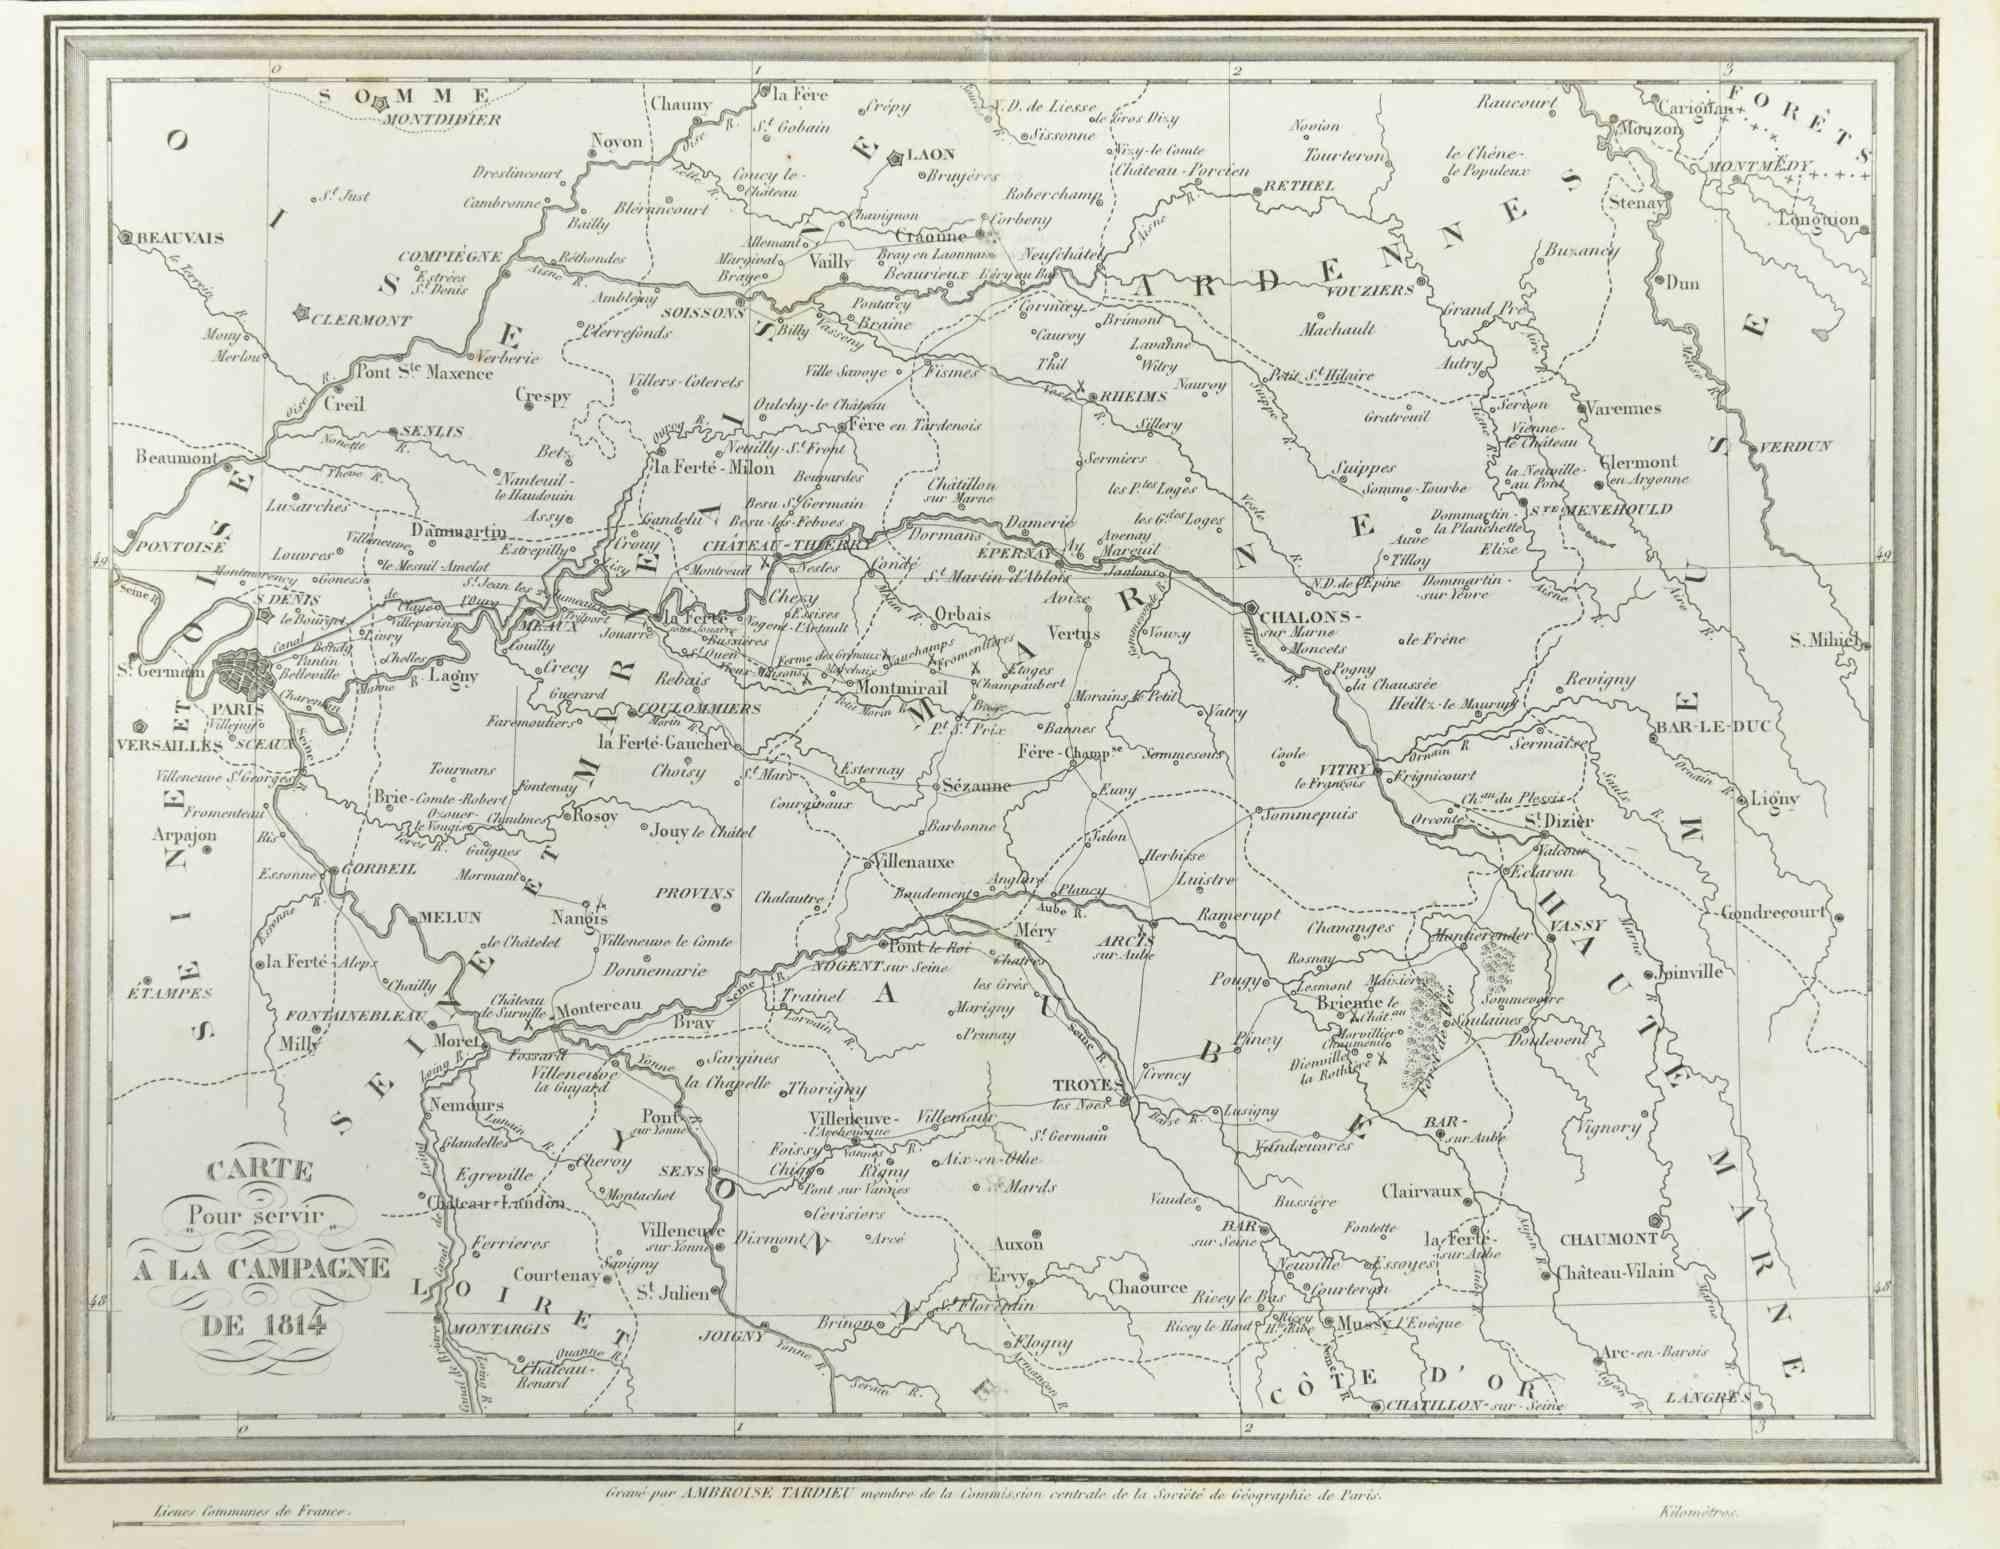 Pierre Francois Tardieu Landscape Print - Map of Campaign of 1814 - Etching by Pierre François Tardieu - 1837